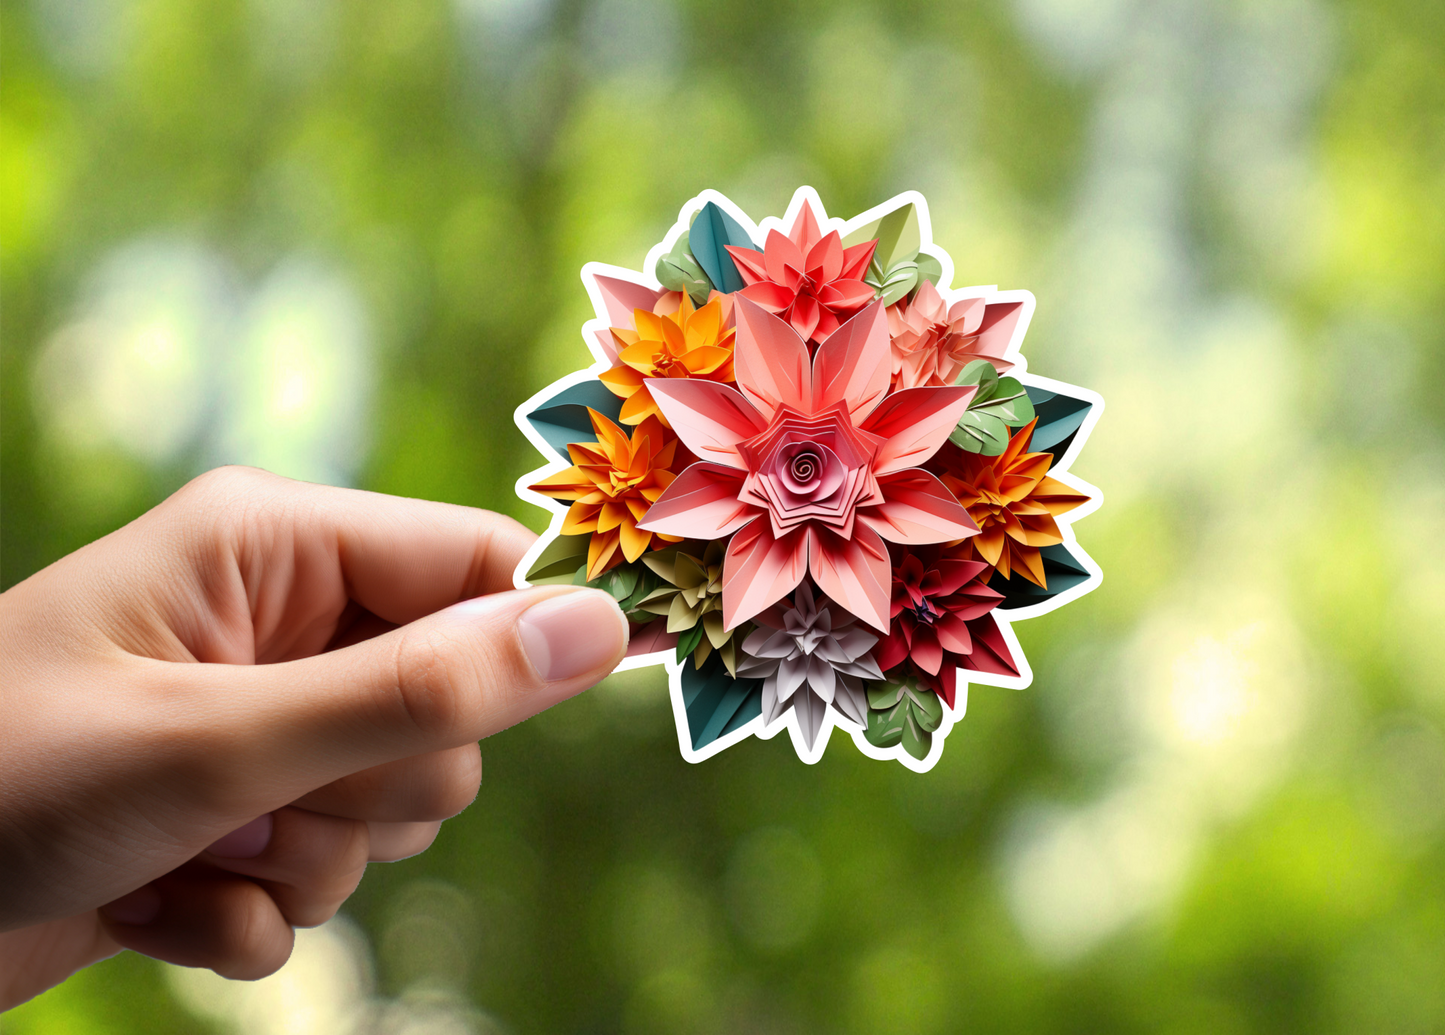 Origami Flowers Sticker